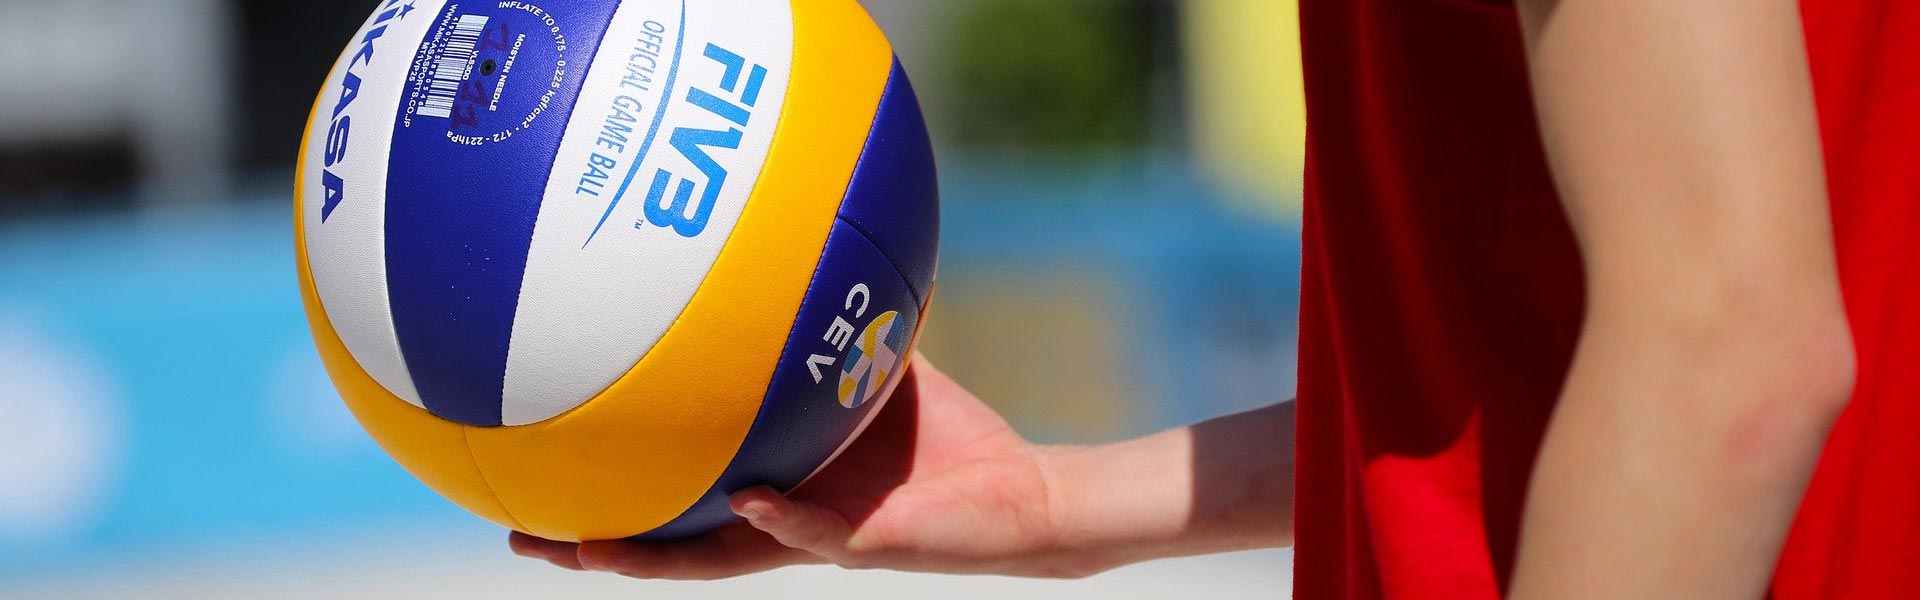 volleyballer houdt vast beachsport groningen